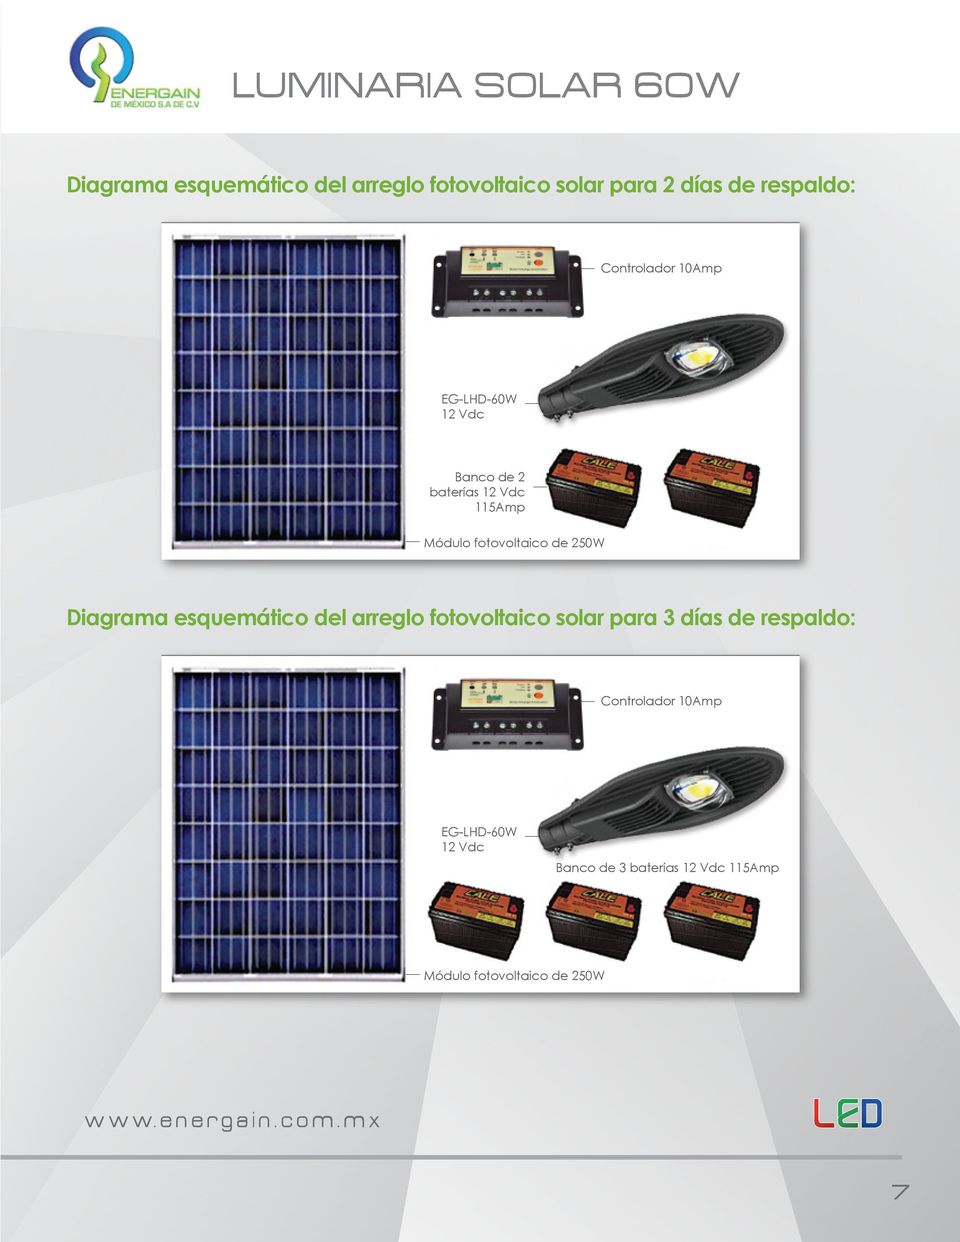 fotovoltaico de 250W Diagrama esquemático del arreglo fotovoltaico solar para 3 días de